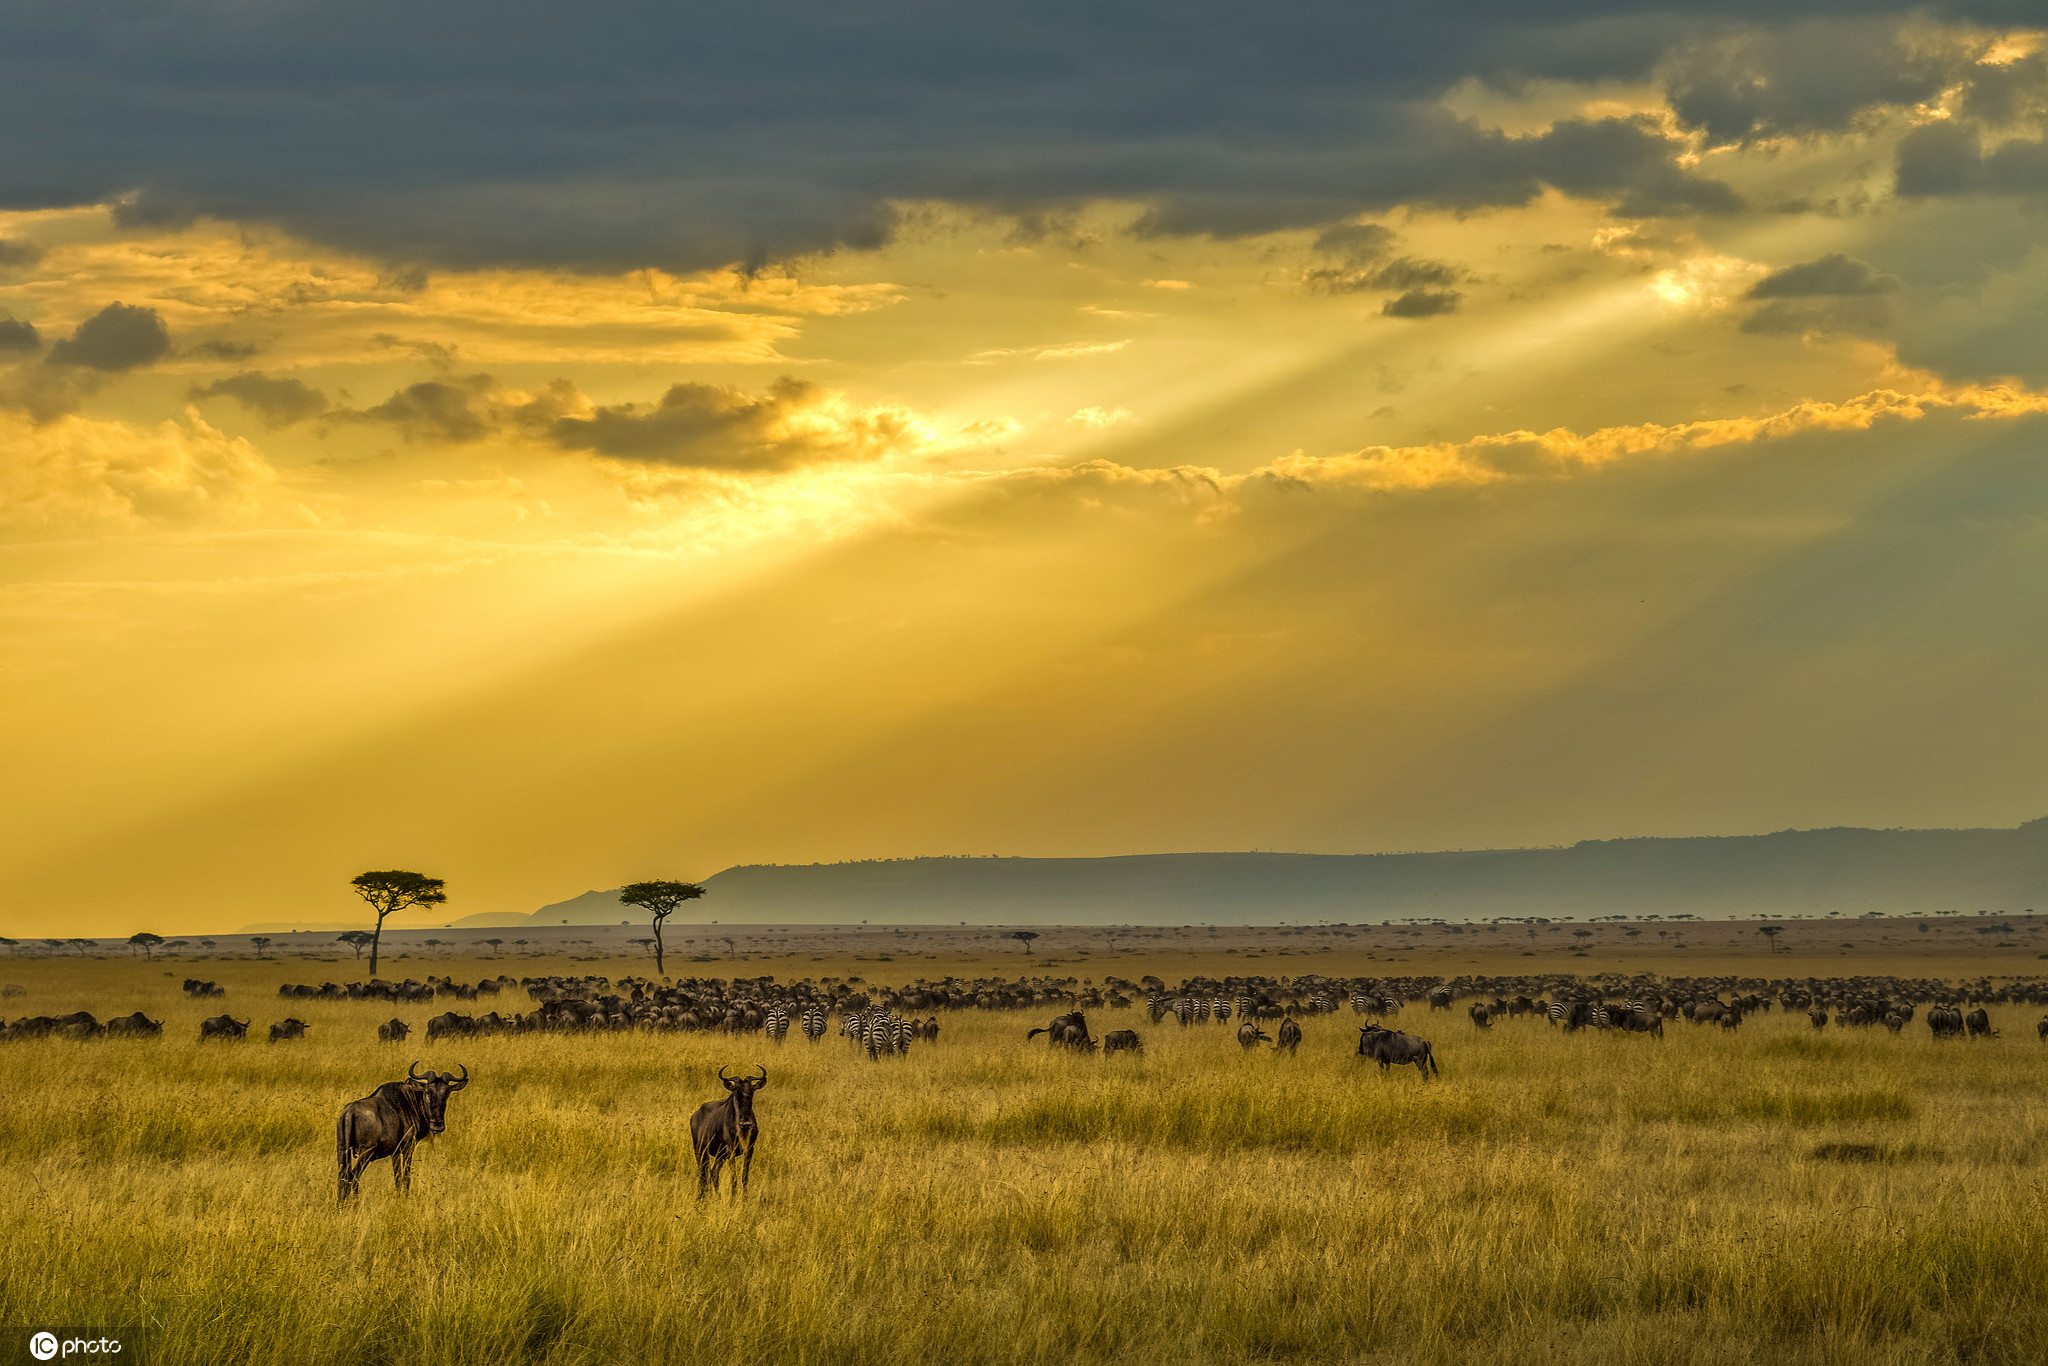 肯尼亚马赛马拉大草原风光掠影 光线明媚美如画卷